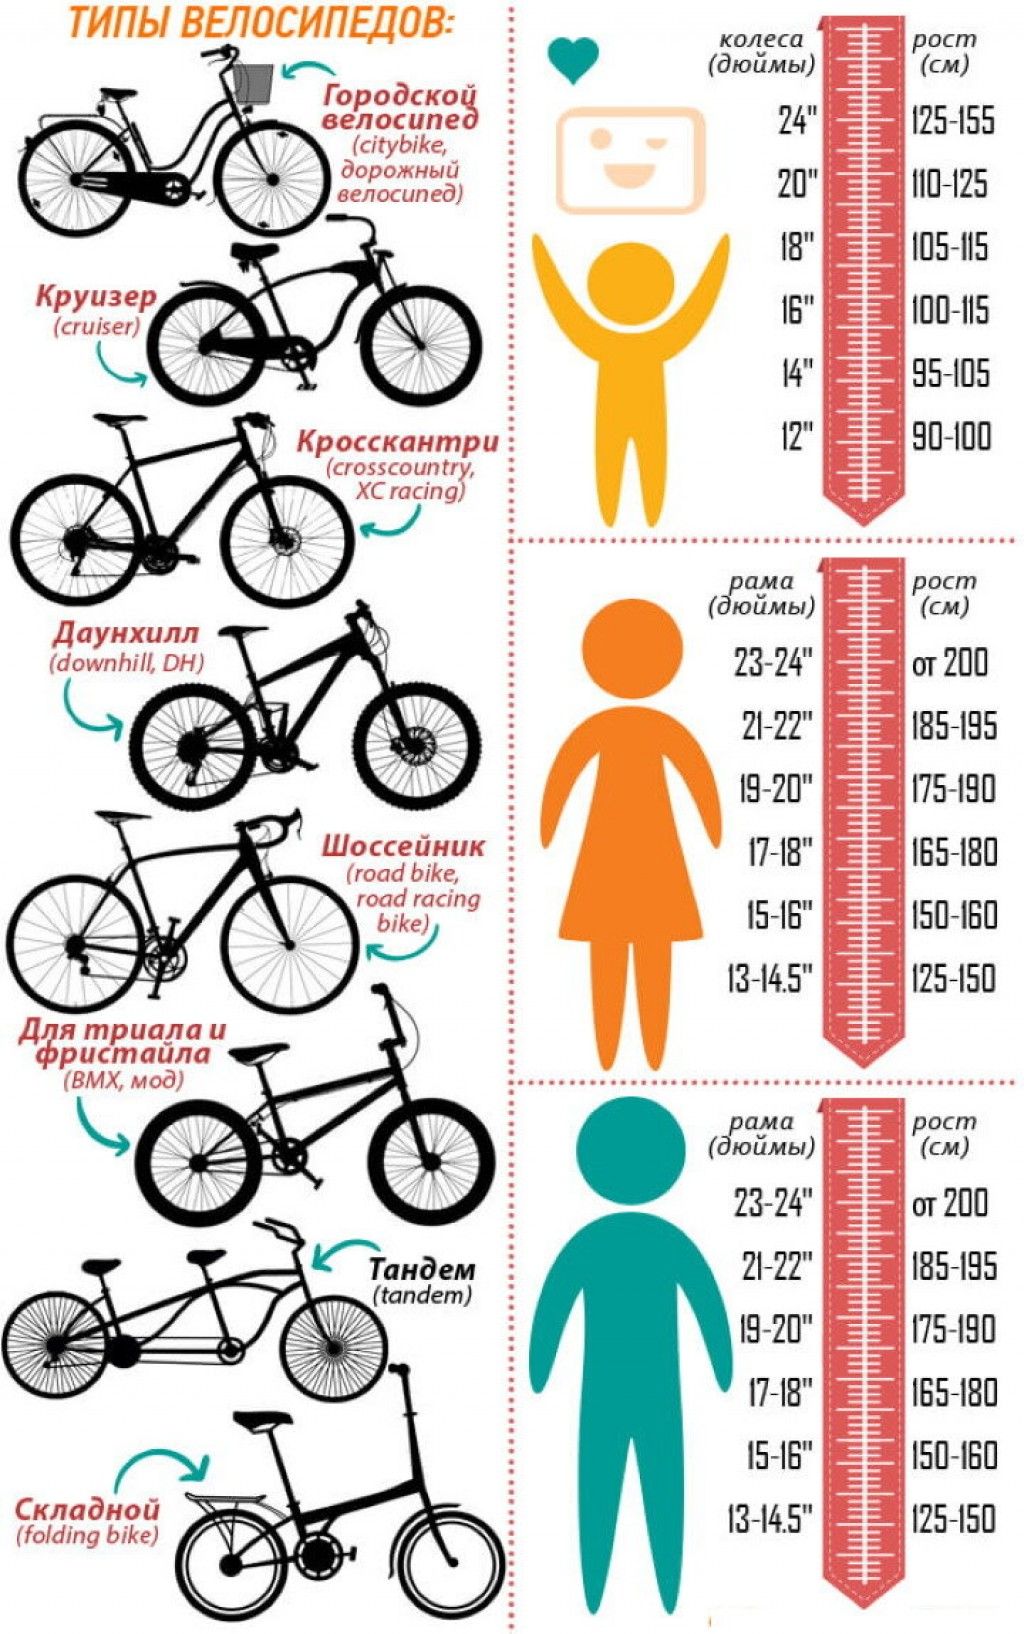 Диаметр 26 на какой рост. Как подобрать размер рамы велосипеда по росту ребенка. Как выбрать размер рамы велосипеда по росту ребенка. Размер рамы и колес велосипеда по росту таблица для детей. Размер рамы у велосипеда с 26 колесами.